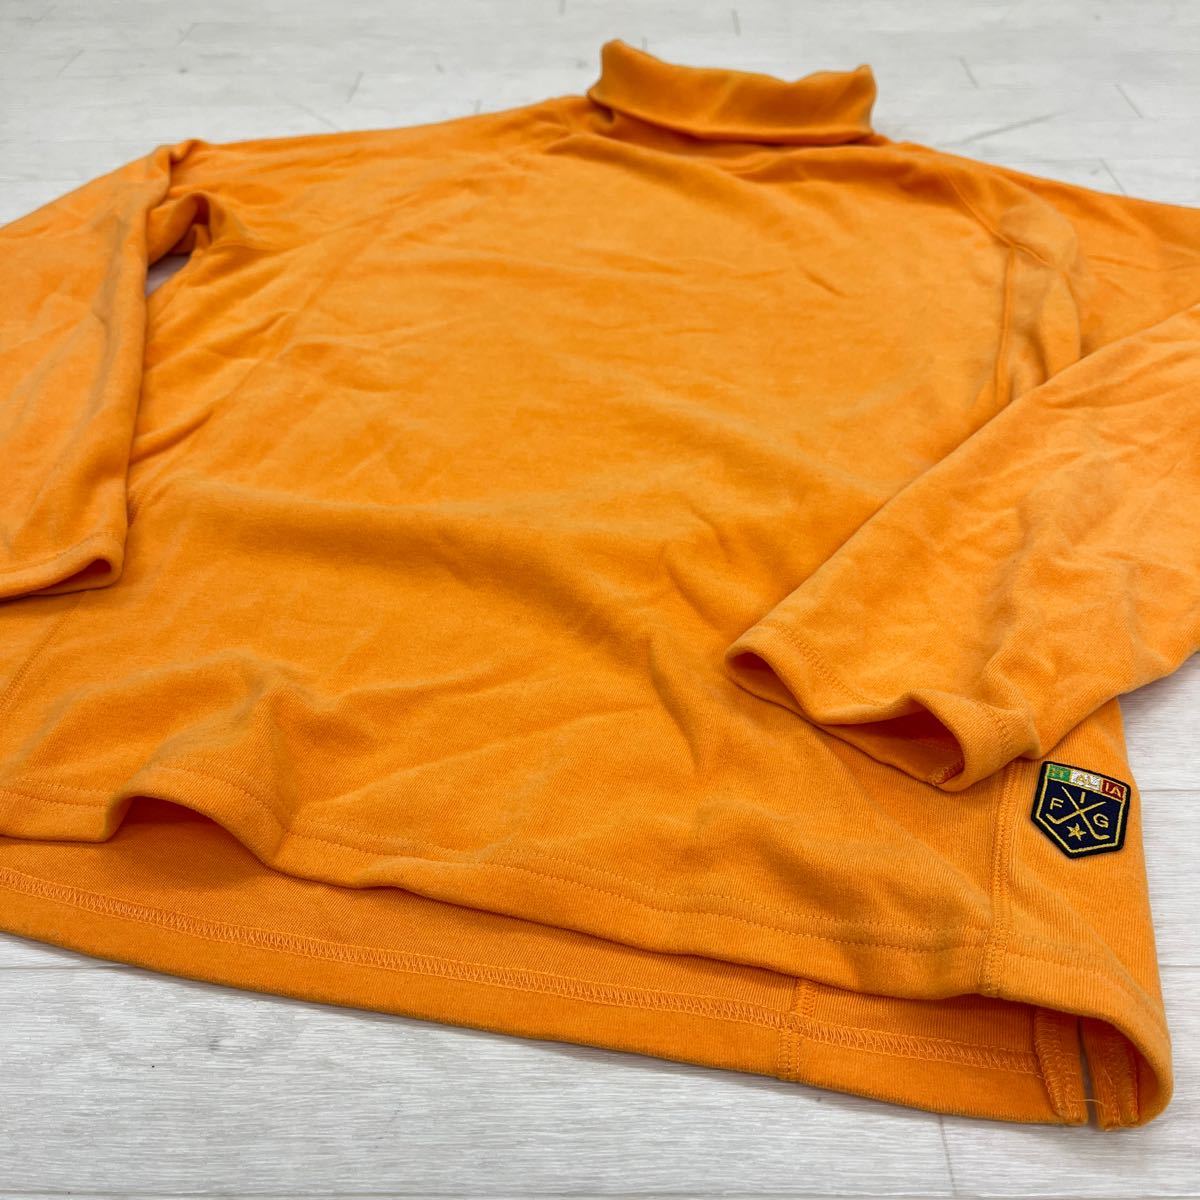 1347◎ Kappa カッパ ゴルフ ウェア トップス トレーナー タートルネック 長袖 ロゴ 刺繍 カジュアル オレンジ メンズM_画像3